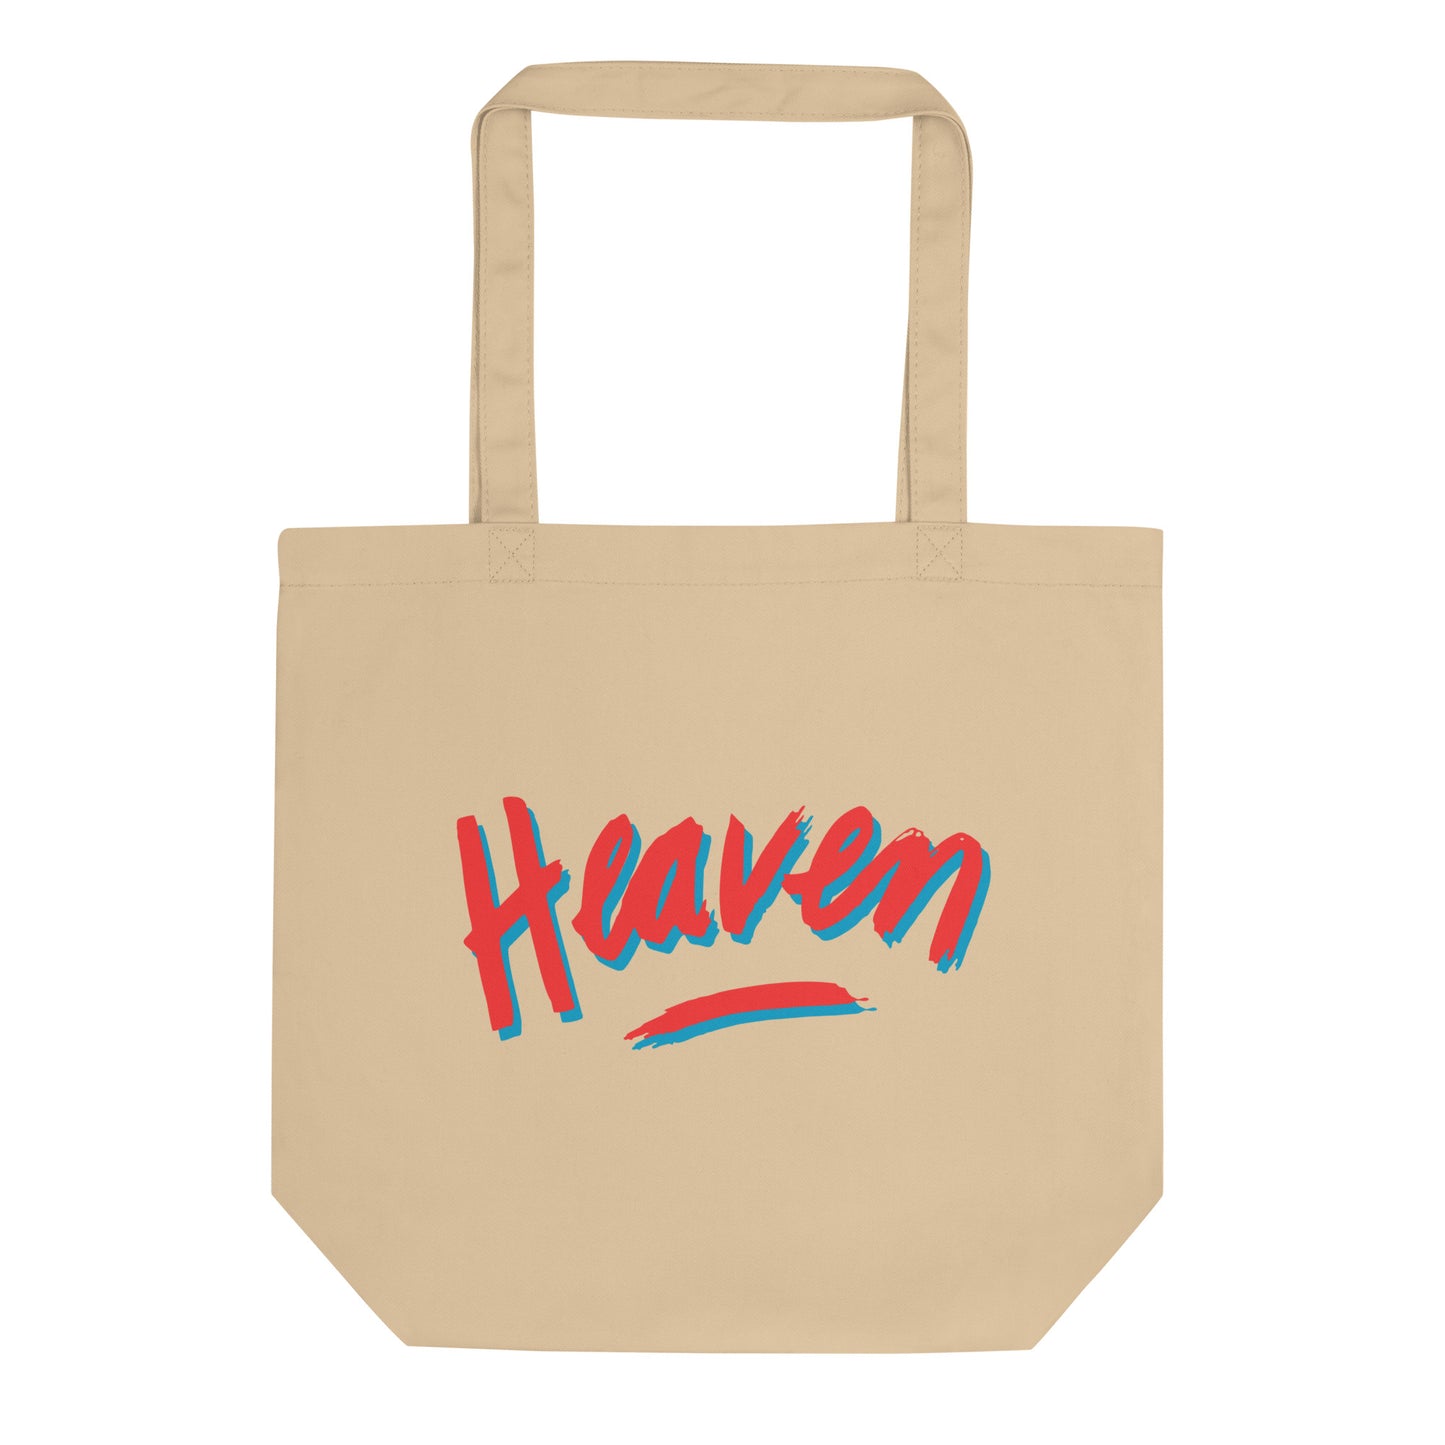 Heaven Tote Bag